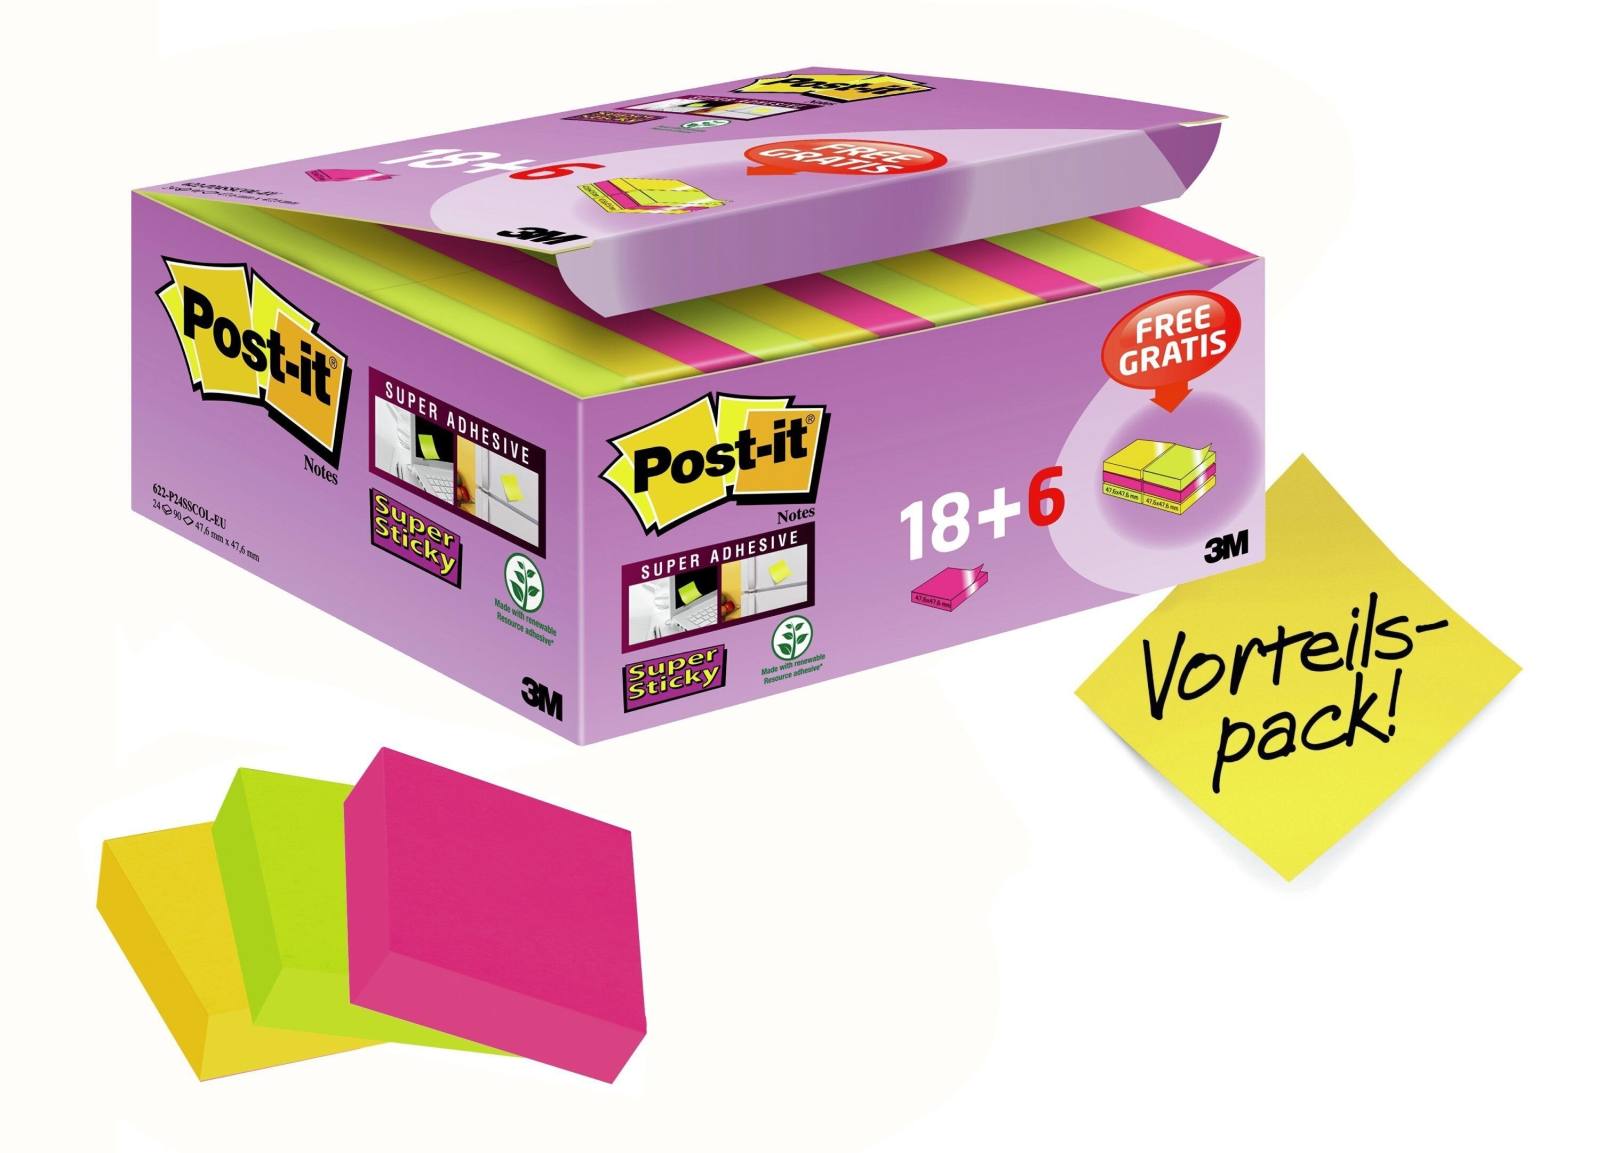 3M Post-it Super Sticky Notes Promotion 622P24SC, 24 pads van 90 vellen in een doos voor een speciale prijs, ultra roze, geel, neon groen, 48 mm x 48 mm, niet individueel gecellofaneerd, PEFC gecertificeerd